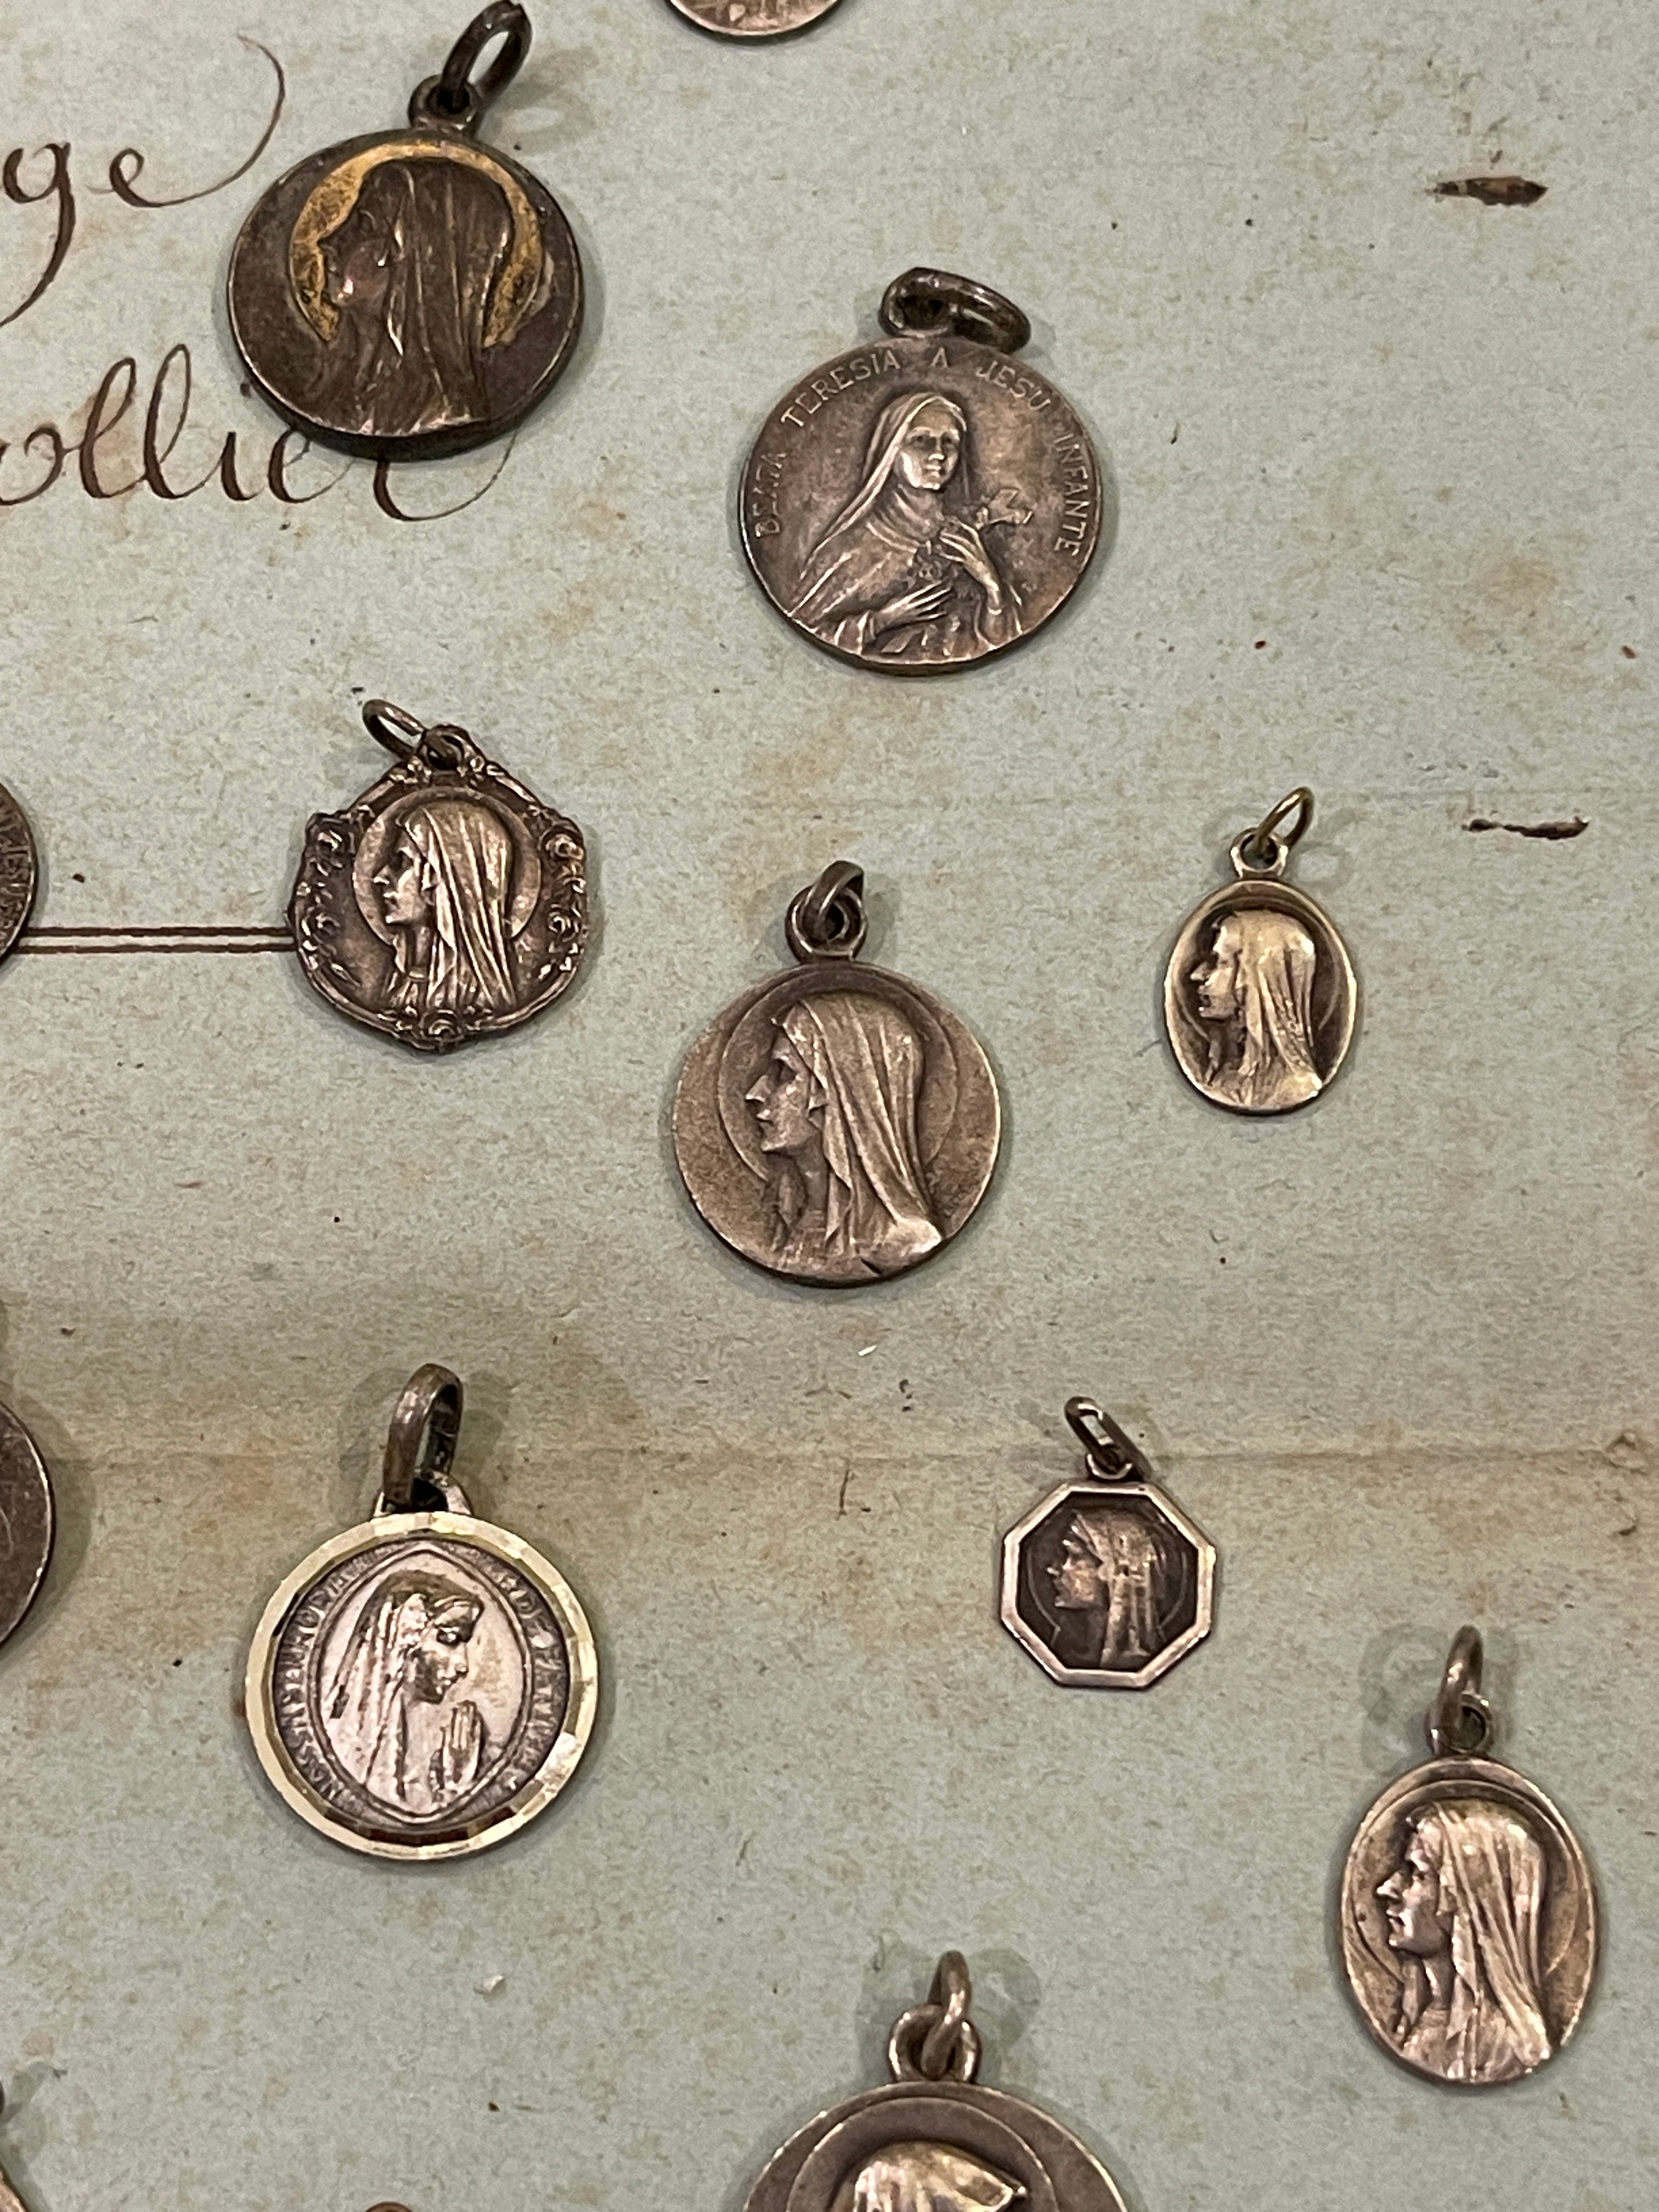 Original Vintage Medals from France - RM3